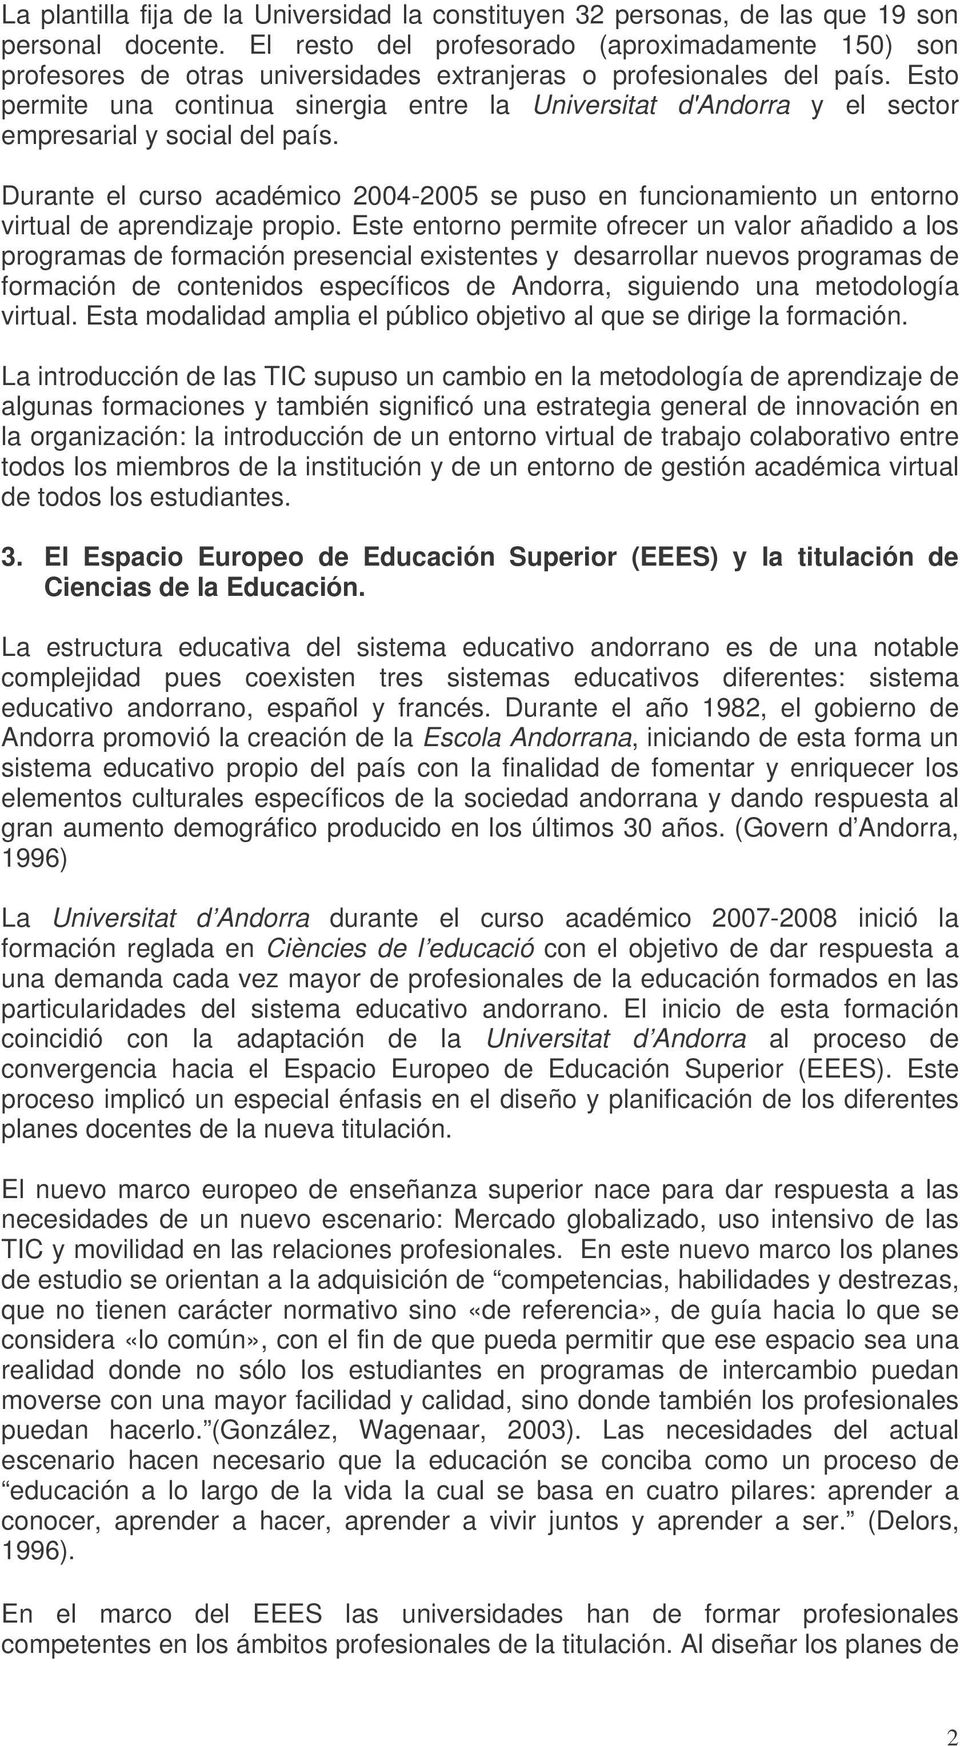 Esto permite una continua sinergia entre la Universitat d'andorra y el sector empresarial y social del país.